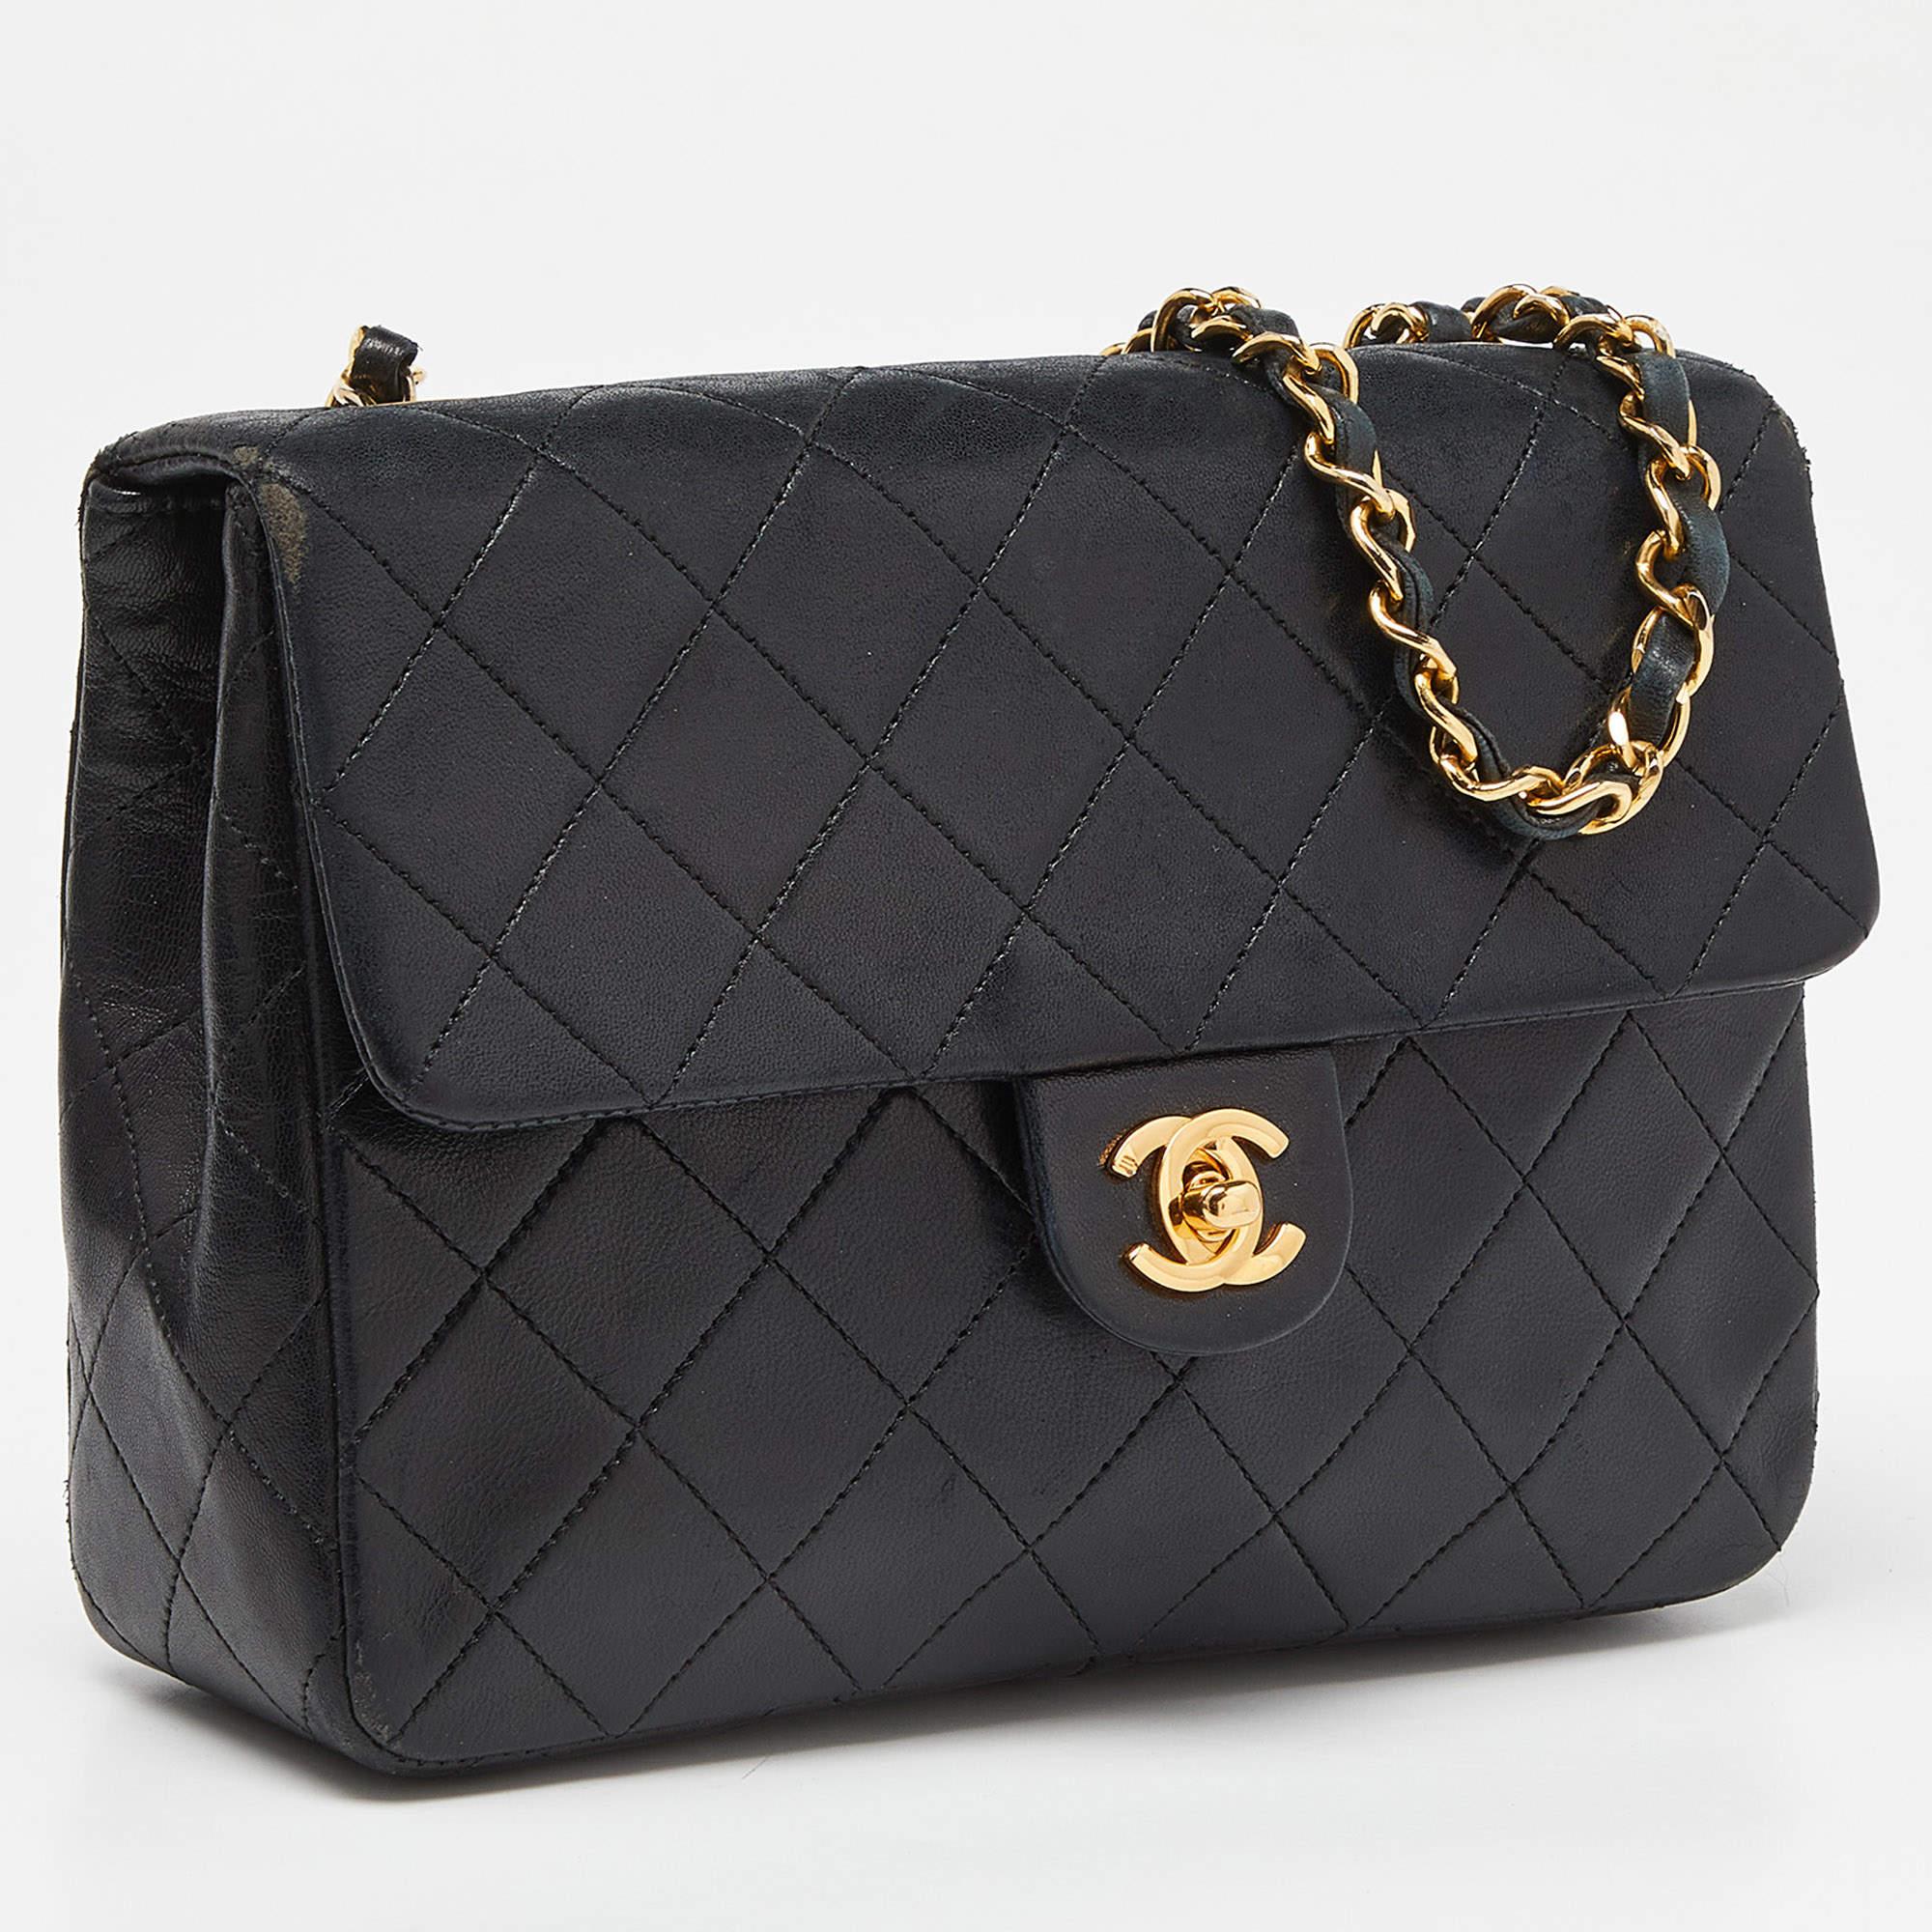 Women's Chanel Black Quilted Leather Vintage Flap Shoulder Bag